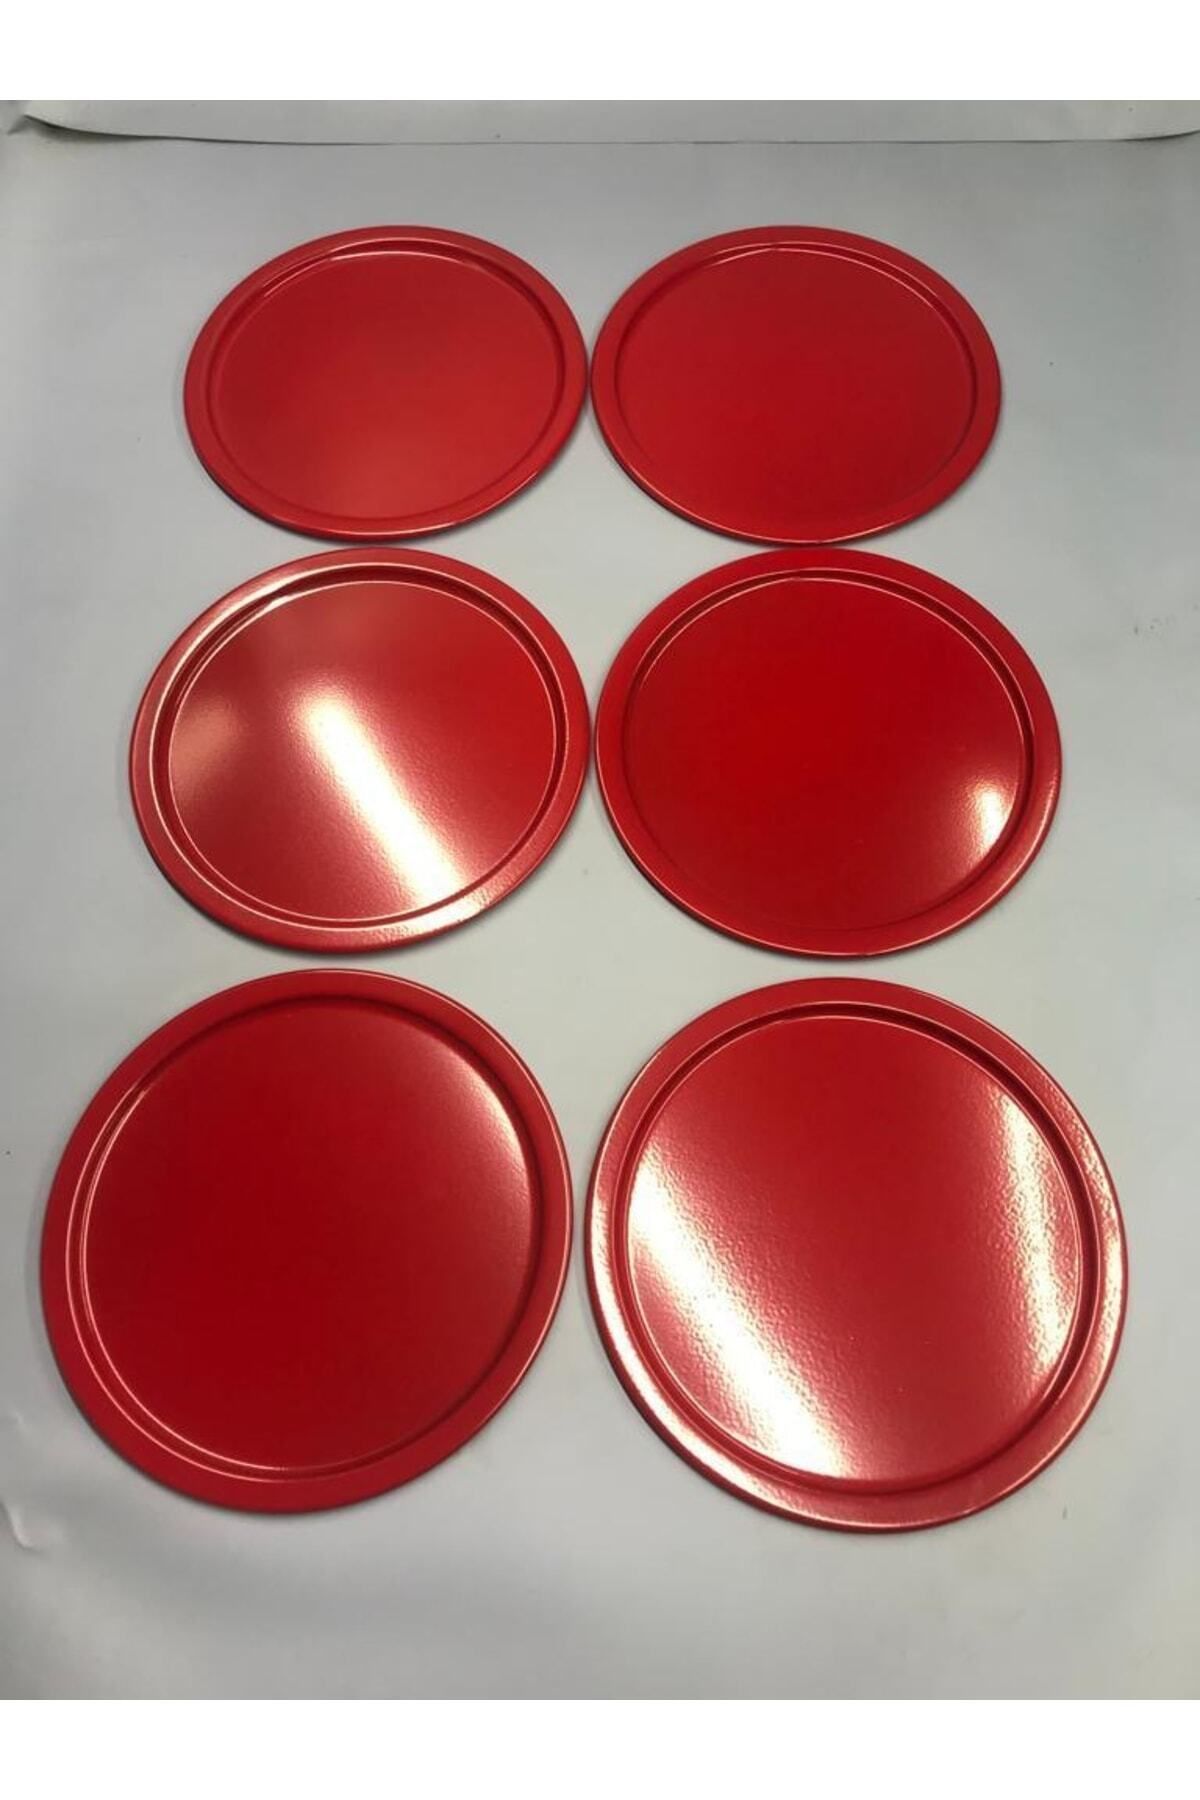 Aslı Hediyelik 6'lı Metal Kırmızı Tek Kişilik Dekoratif Çay, Kahve Ve Pasta Servisi Sunum Tepsisi 23 Cm